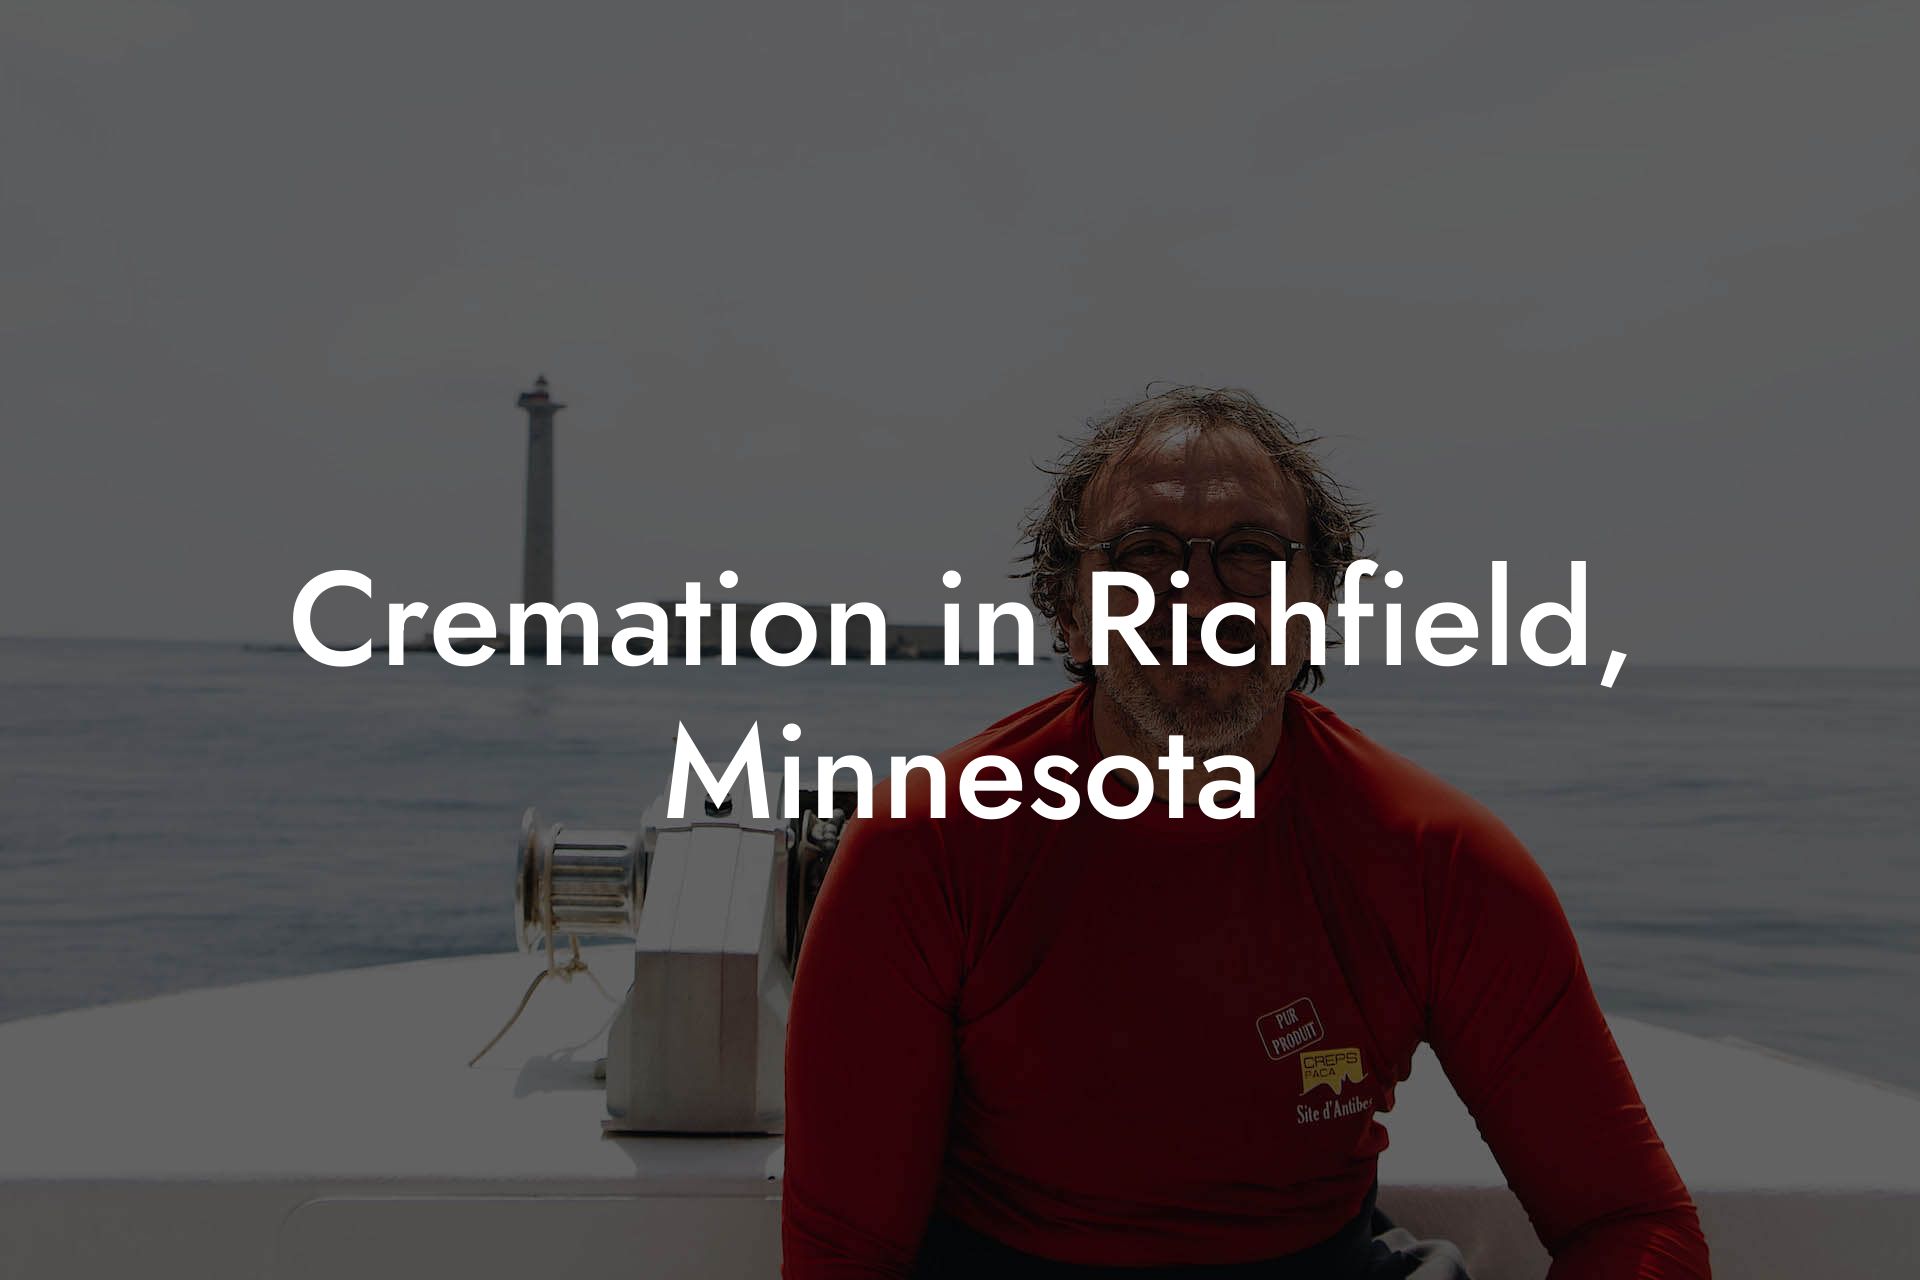 Cremation in Richfield, Minnesota